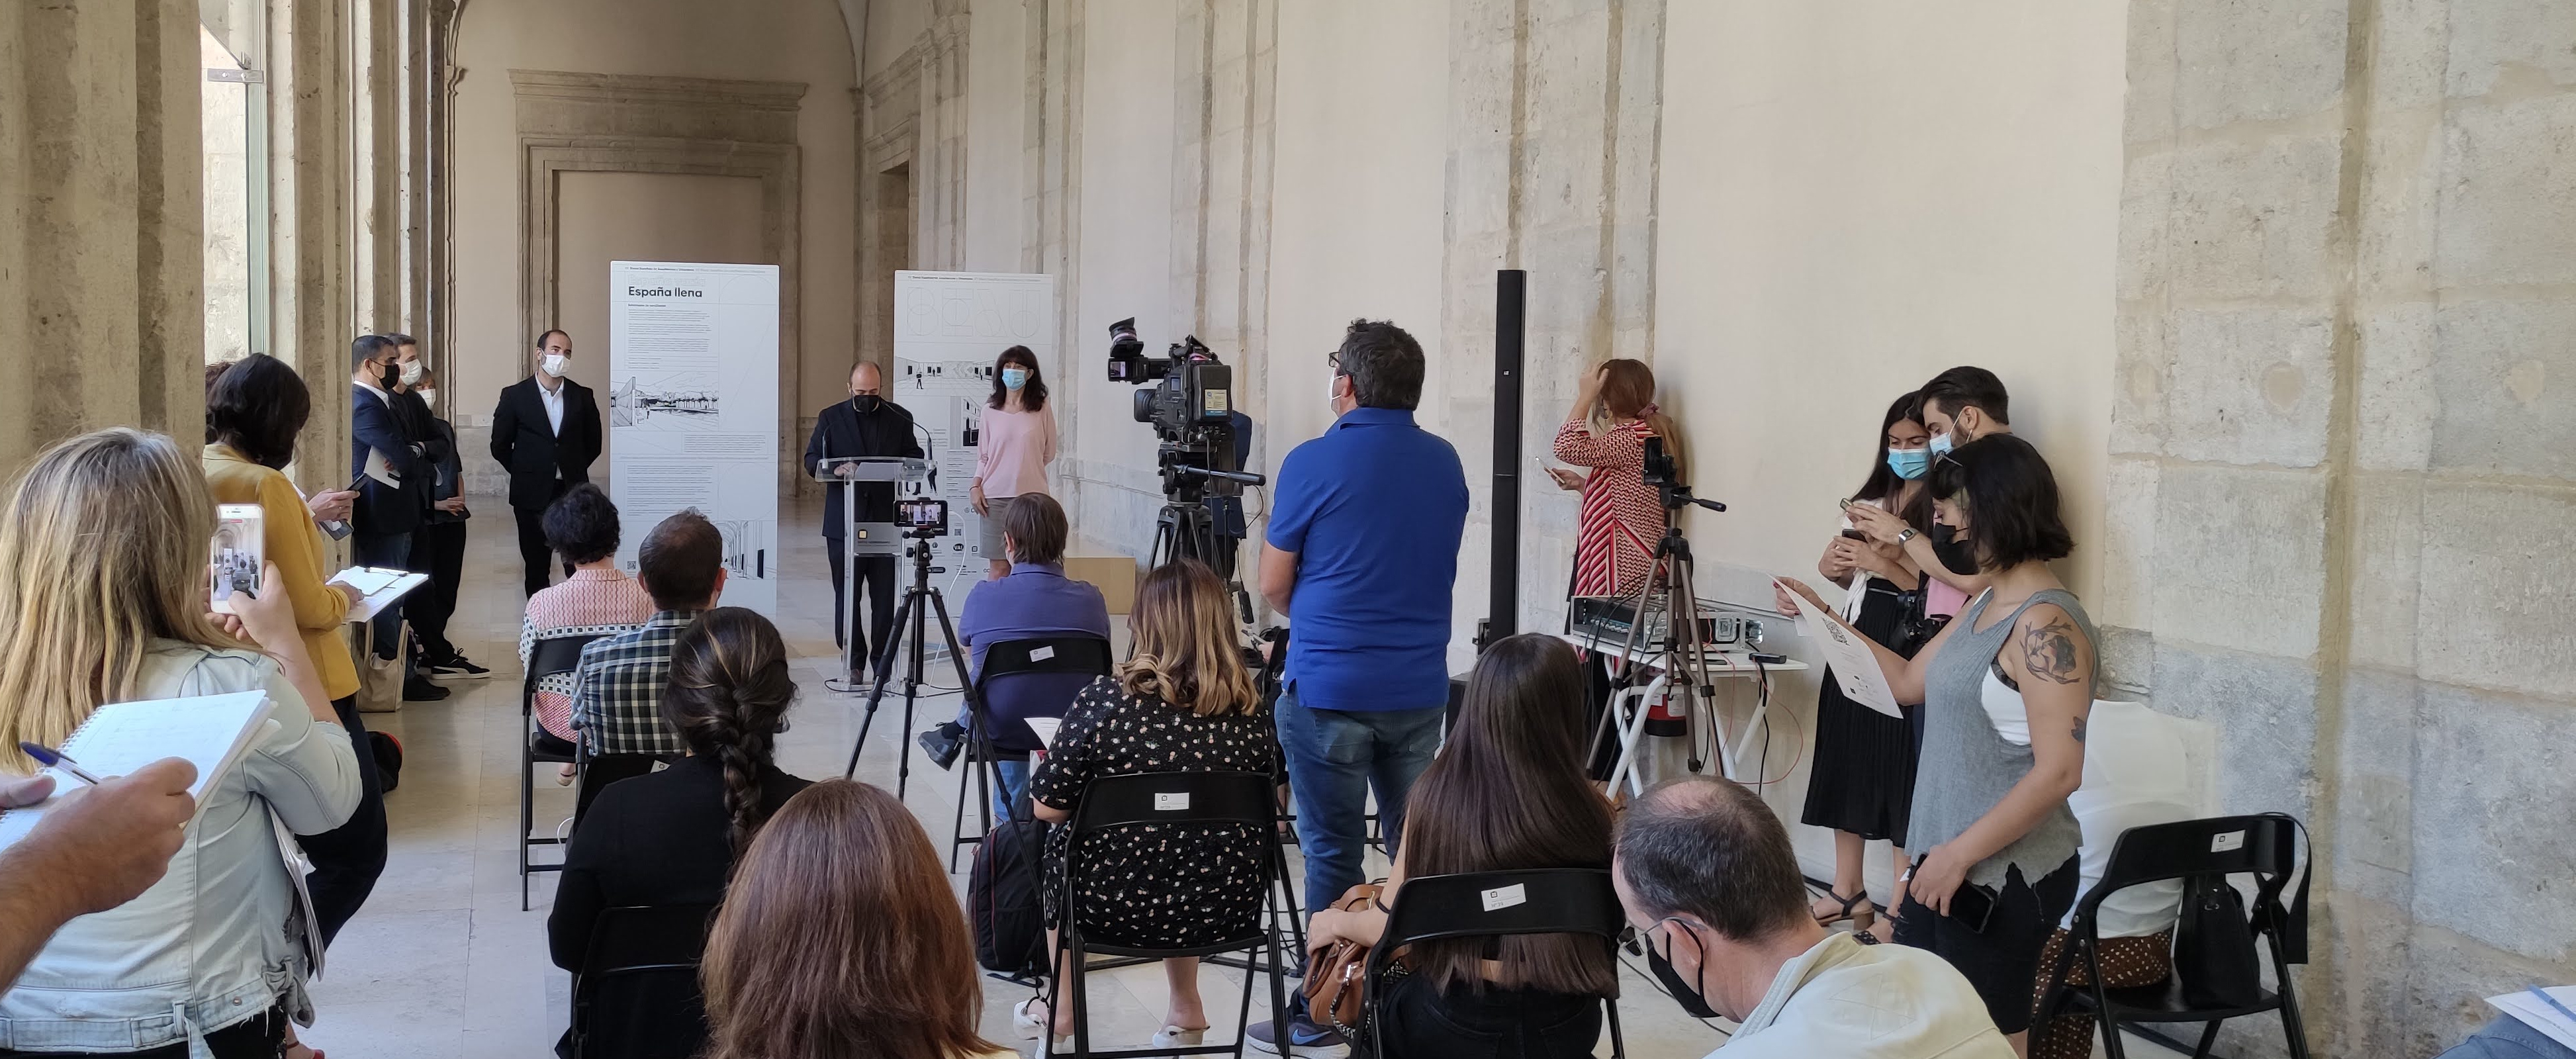 La XV Bienal Española de Arquitectura y Urbanismo da comienzo en Valladolid con el anuncio de los premiados de 'Investigación', 'Fin de Carrera' y Fotografía